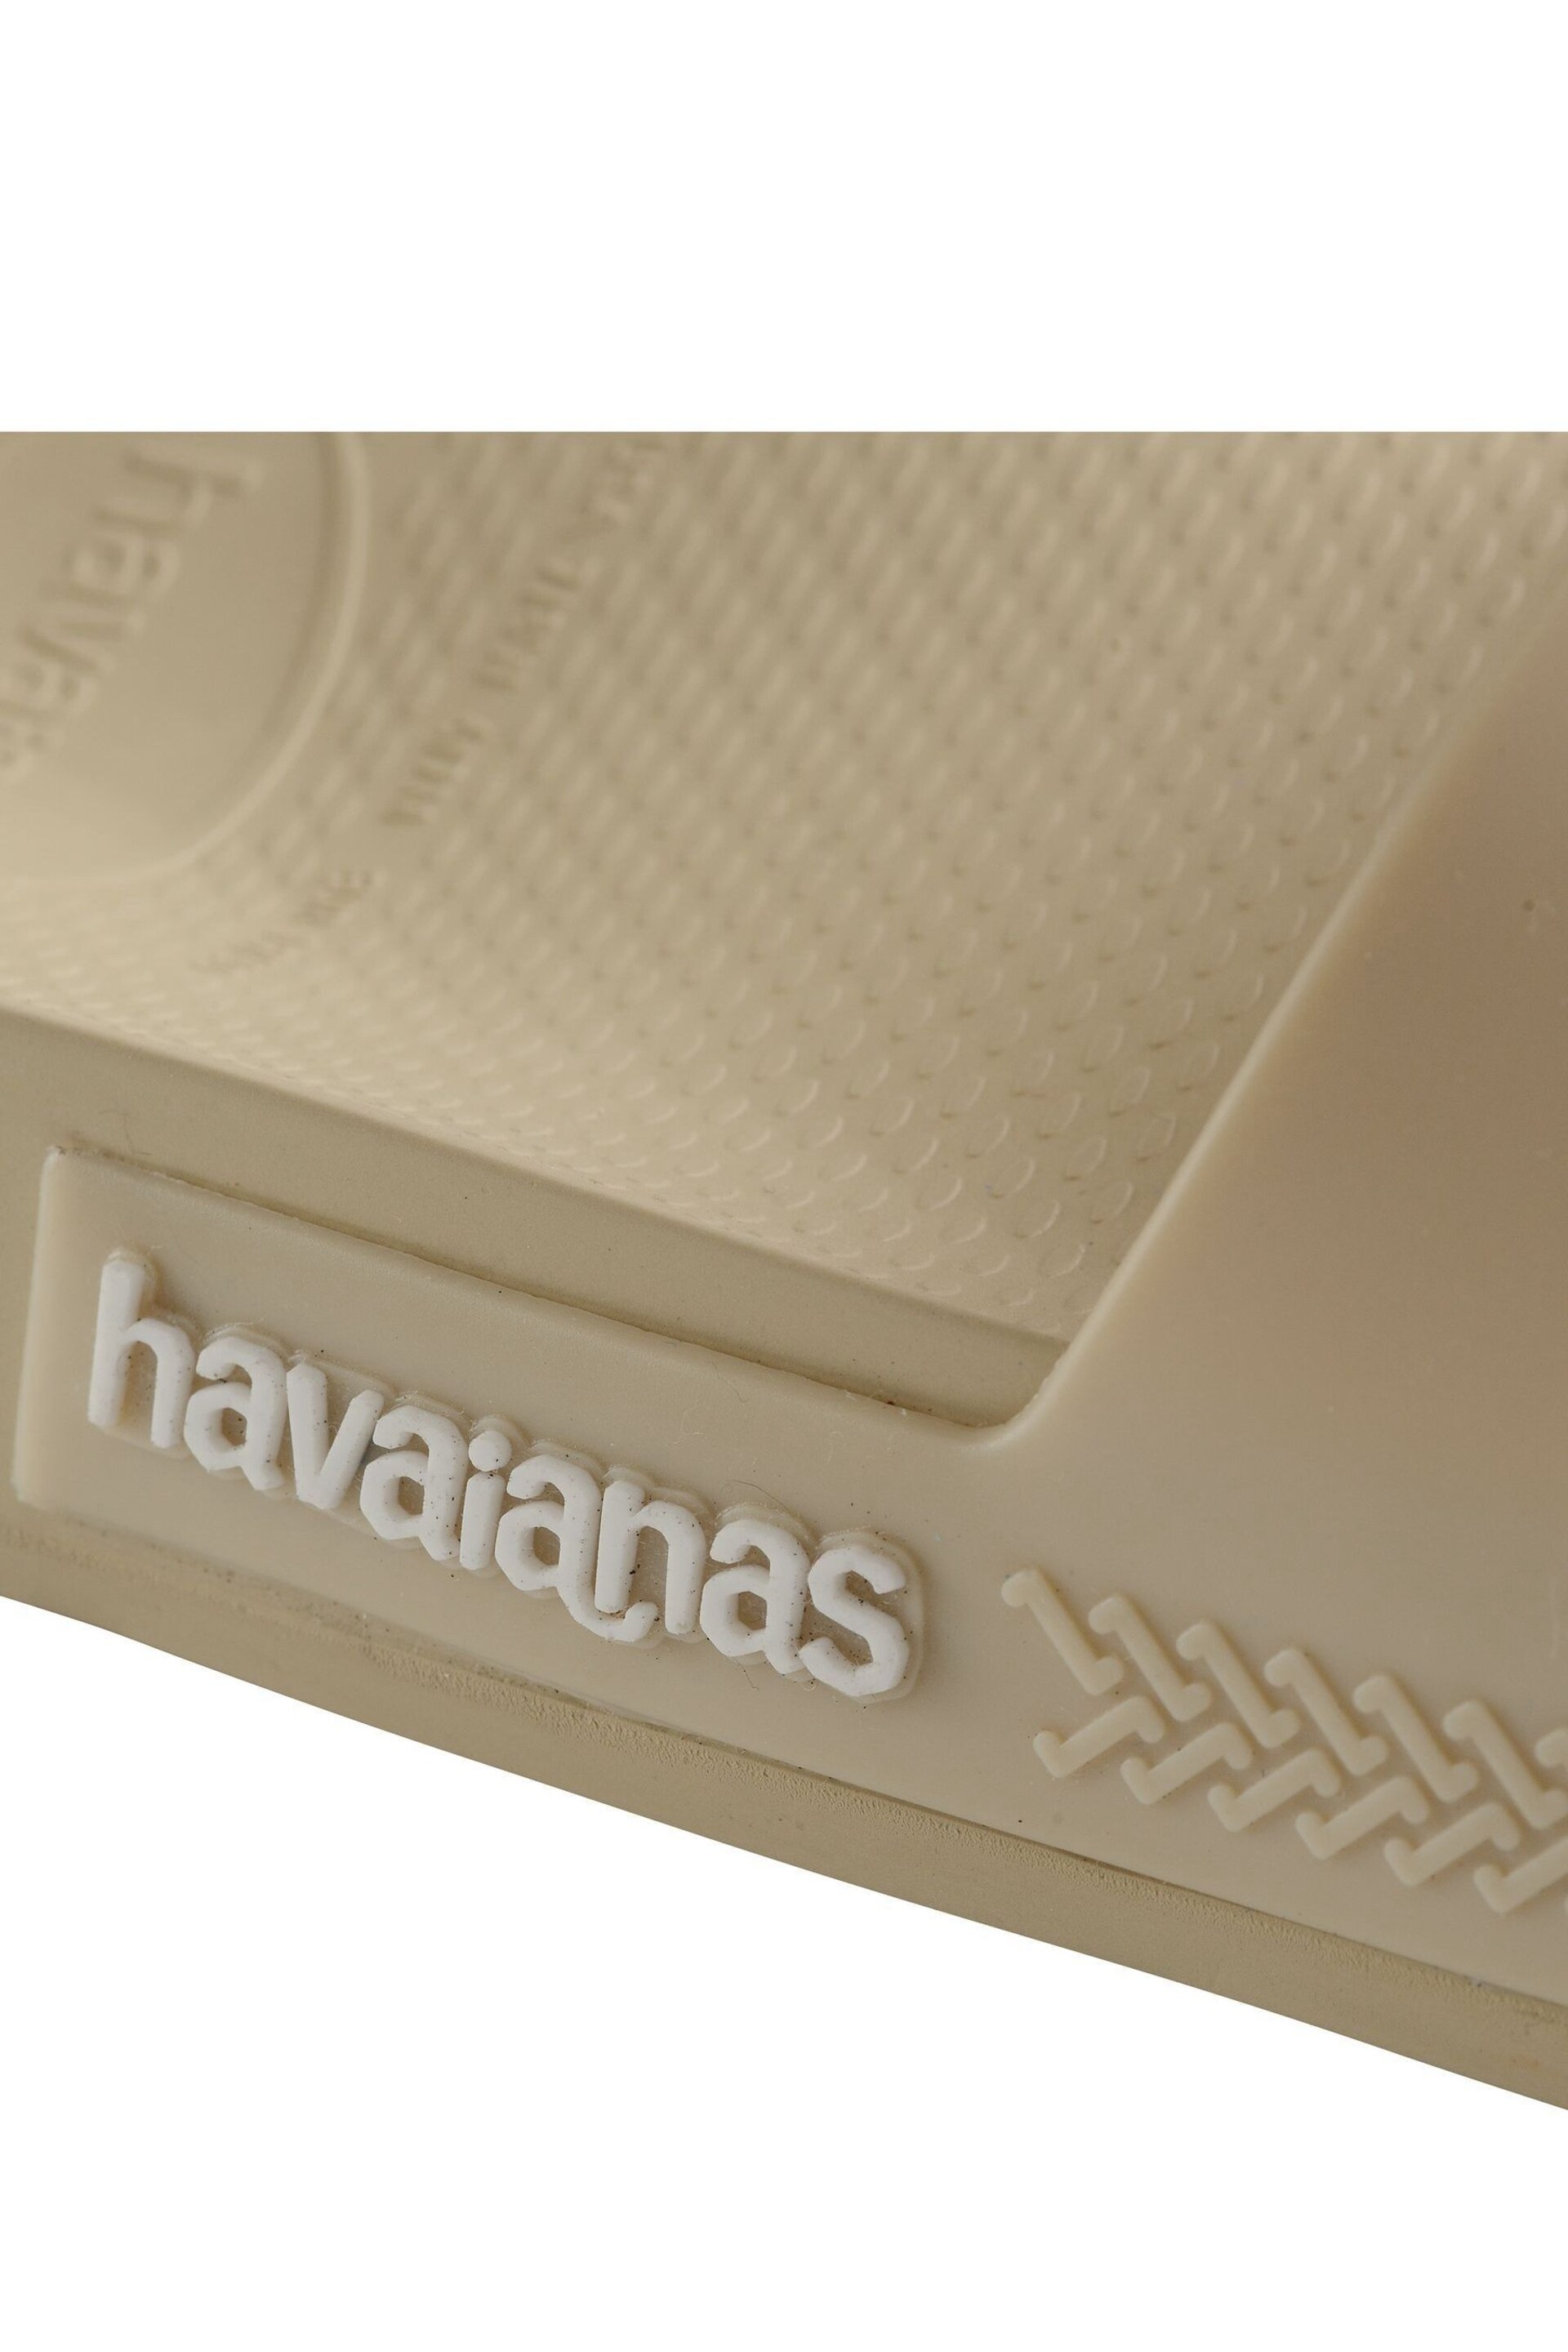 Havaianas Cream Slie Classic Sandals - Image 7 of 8